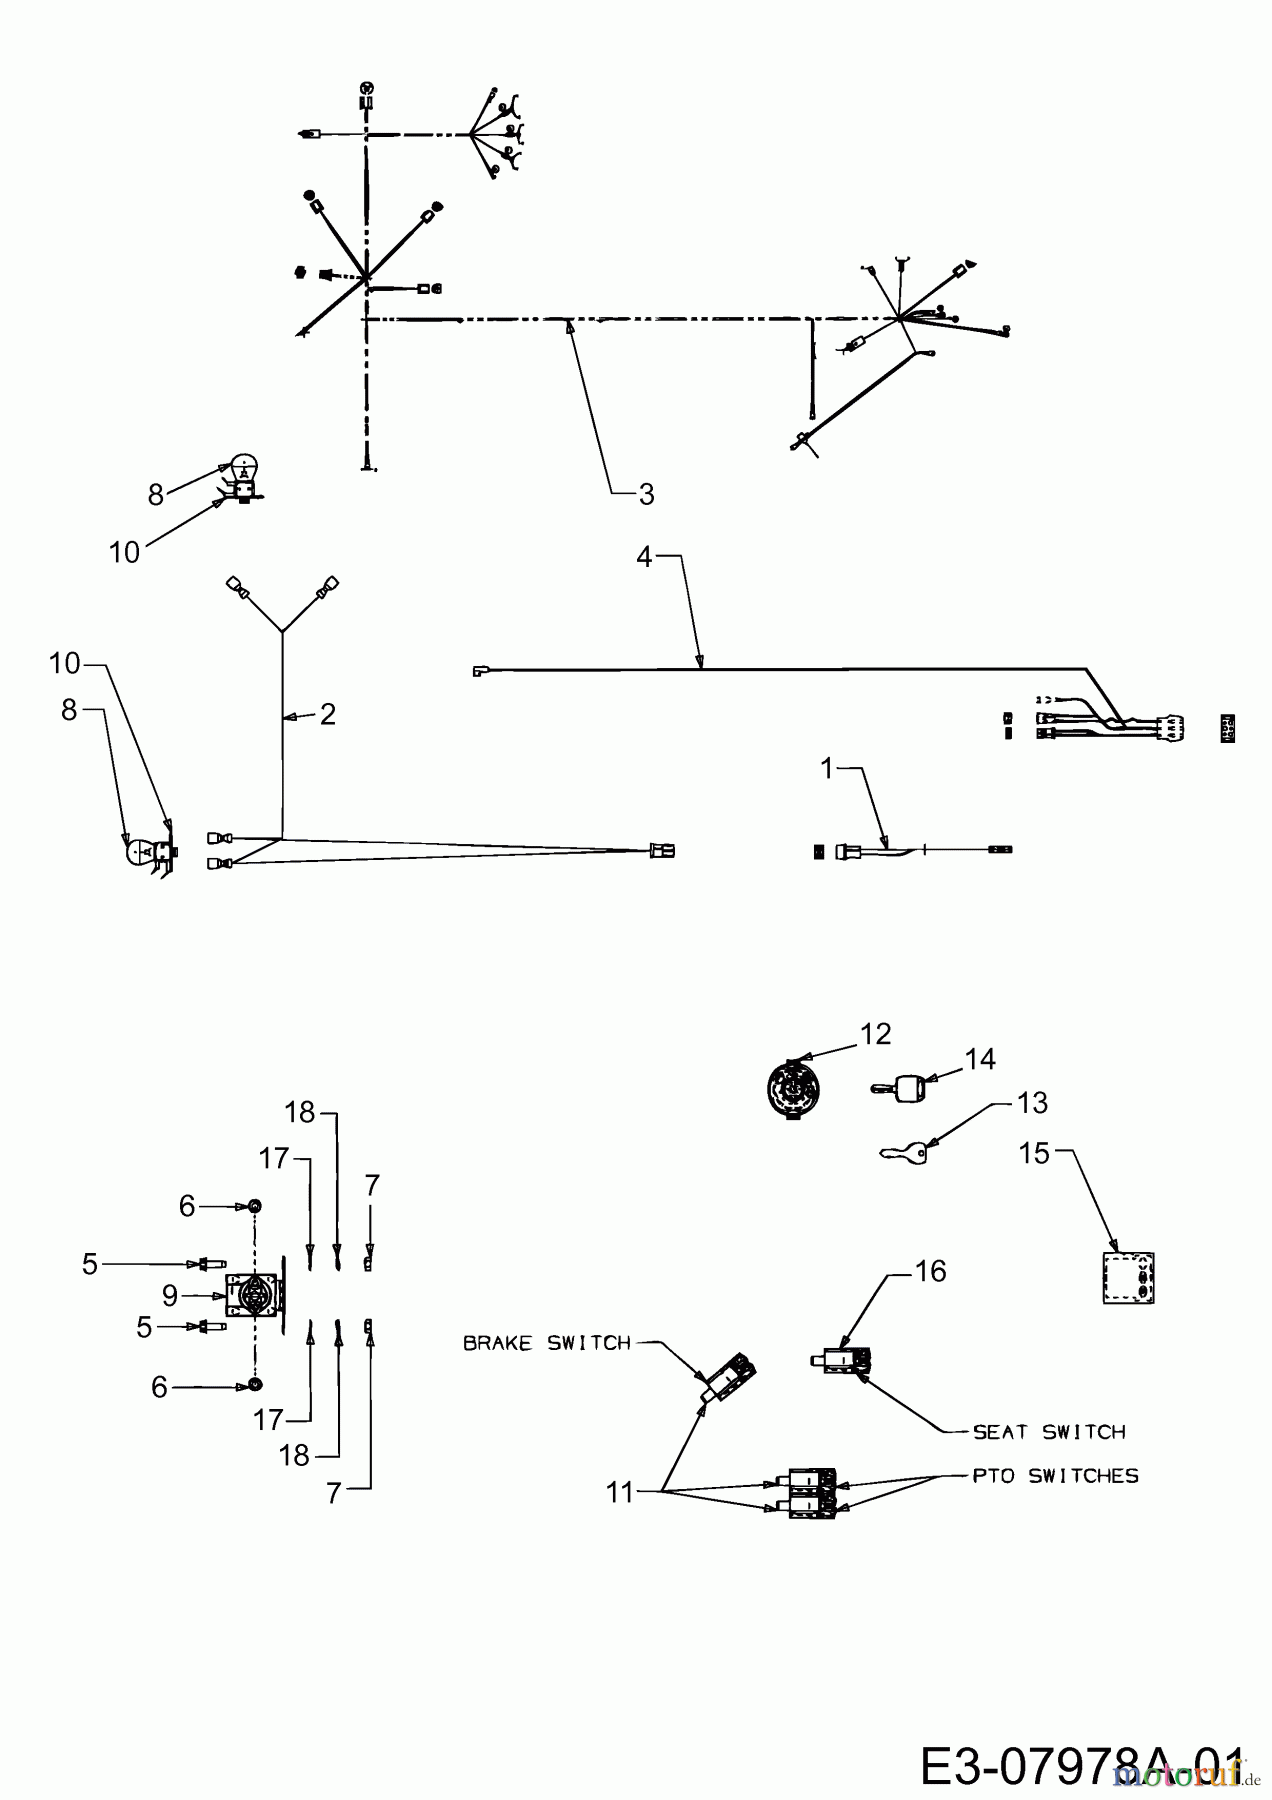  Gutbrod Rasentraktoren GLX 105 RHL 13BT516N690  (2003) Elektroteile